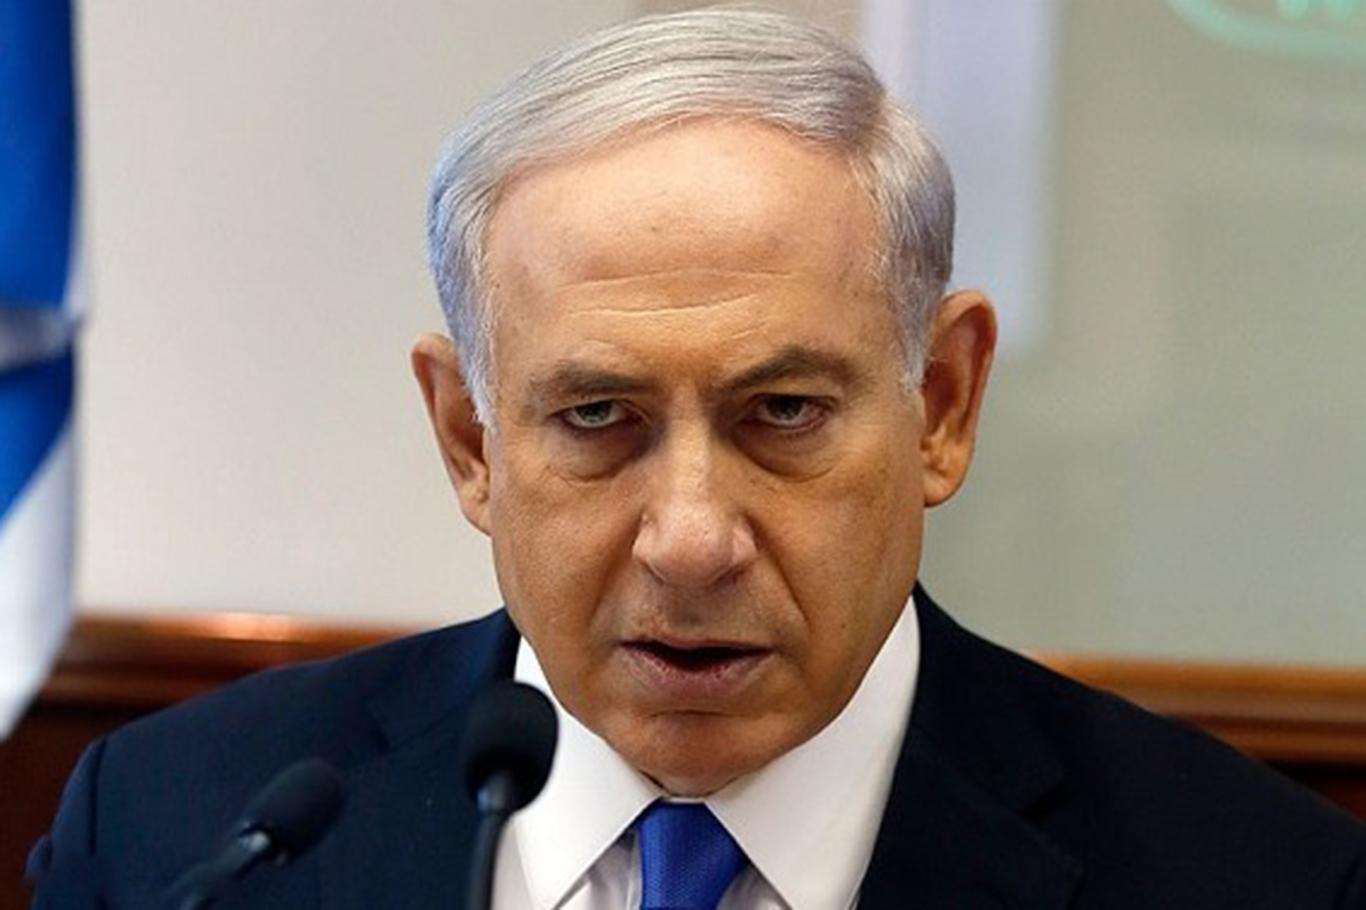 Netanyahu'dan gerginliği artıracak açıklama: "Kudüs başkentimizdir istediğimiz gibi inşa ederiz"